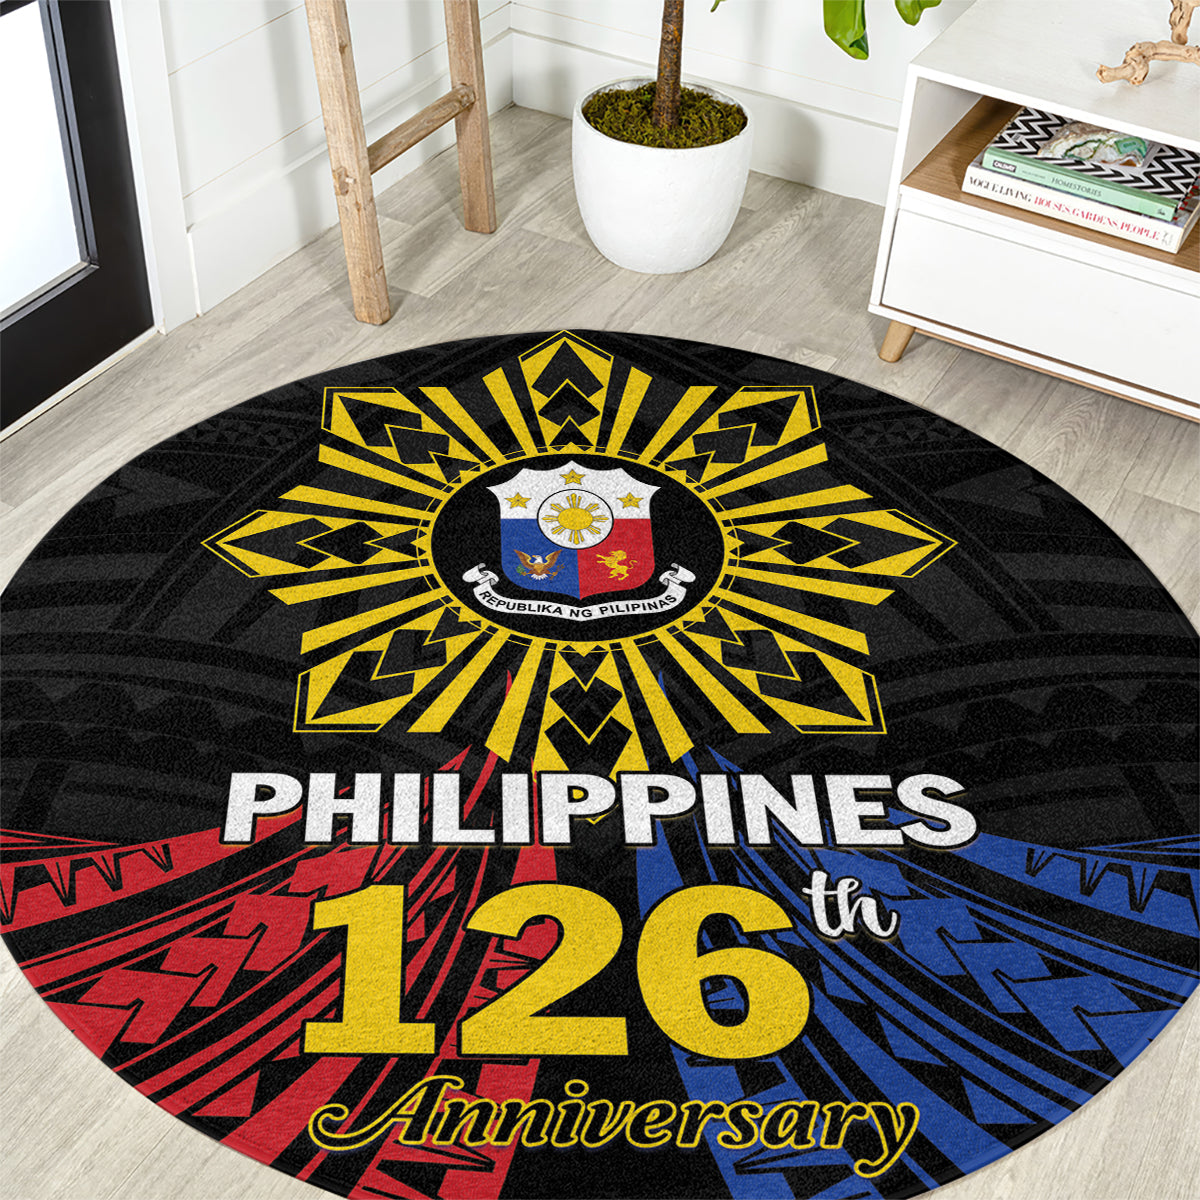 Philippines Independence Day Round Carpet Filipino 126th Anniversary Sun Tattoo